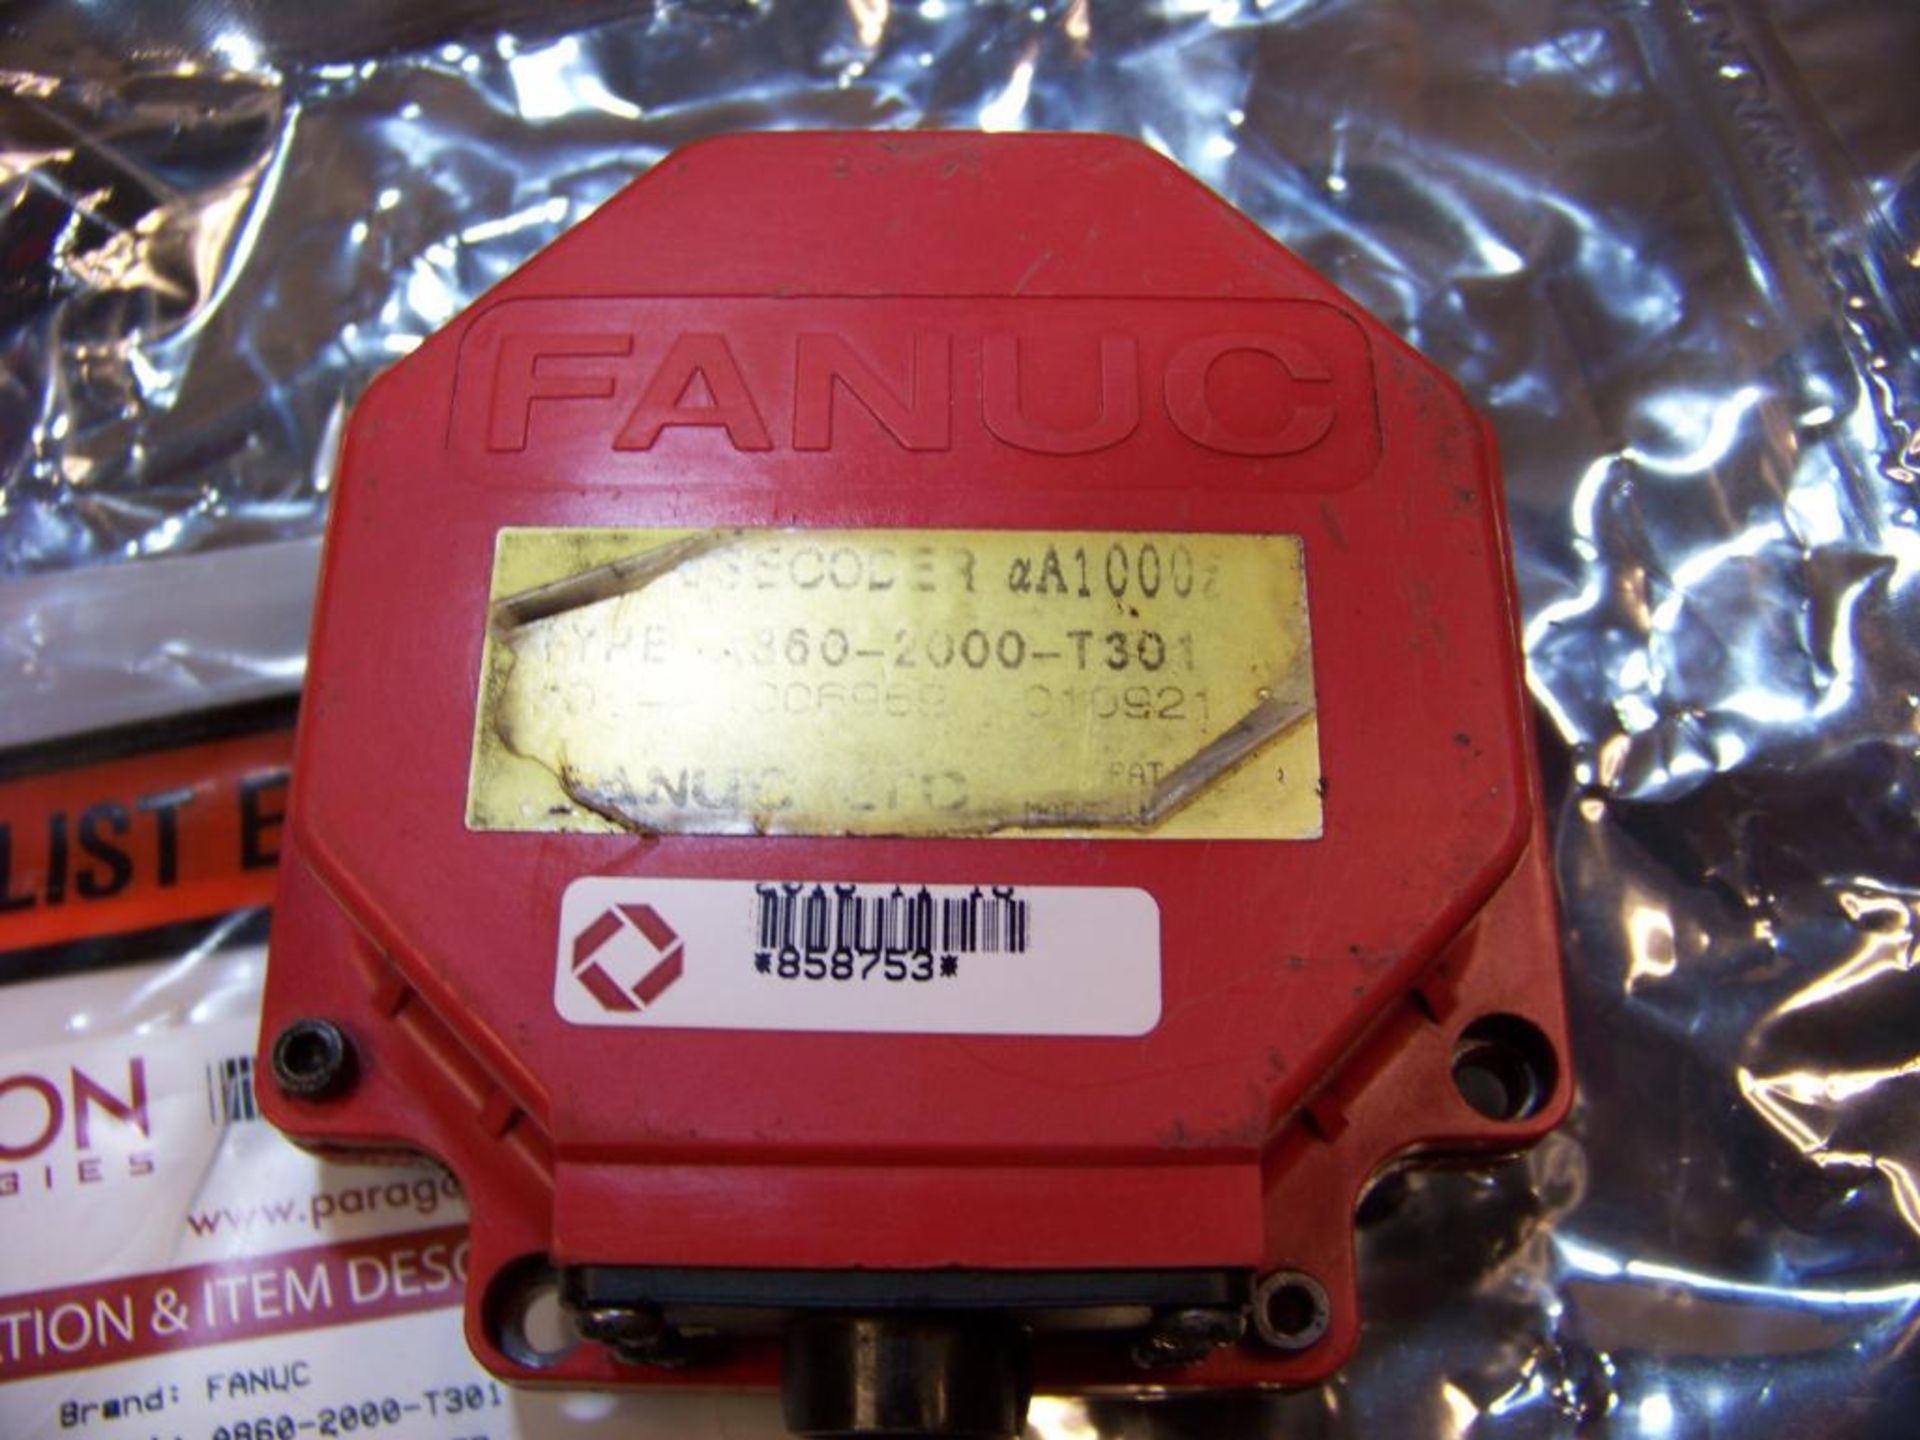 FANUC A860-2000-T301 ENCODER, REFURBISHED - Image 2 of 2